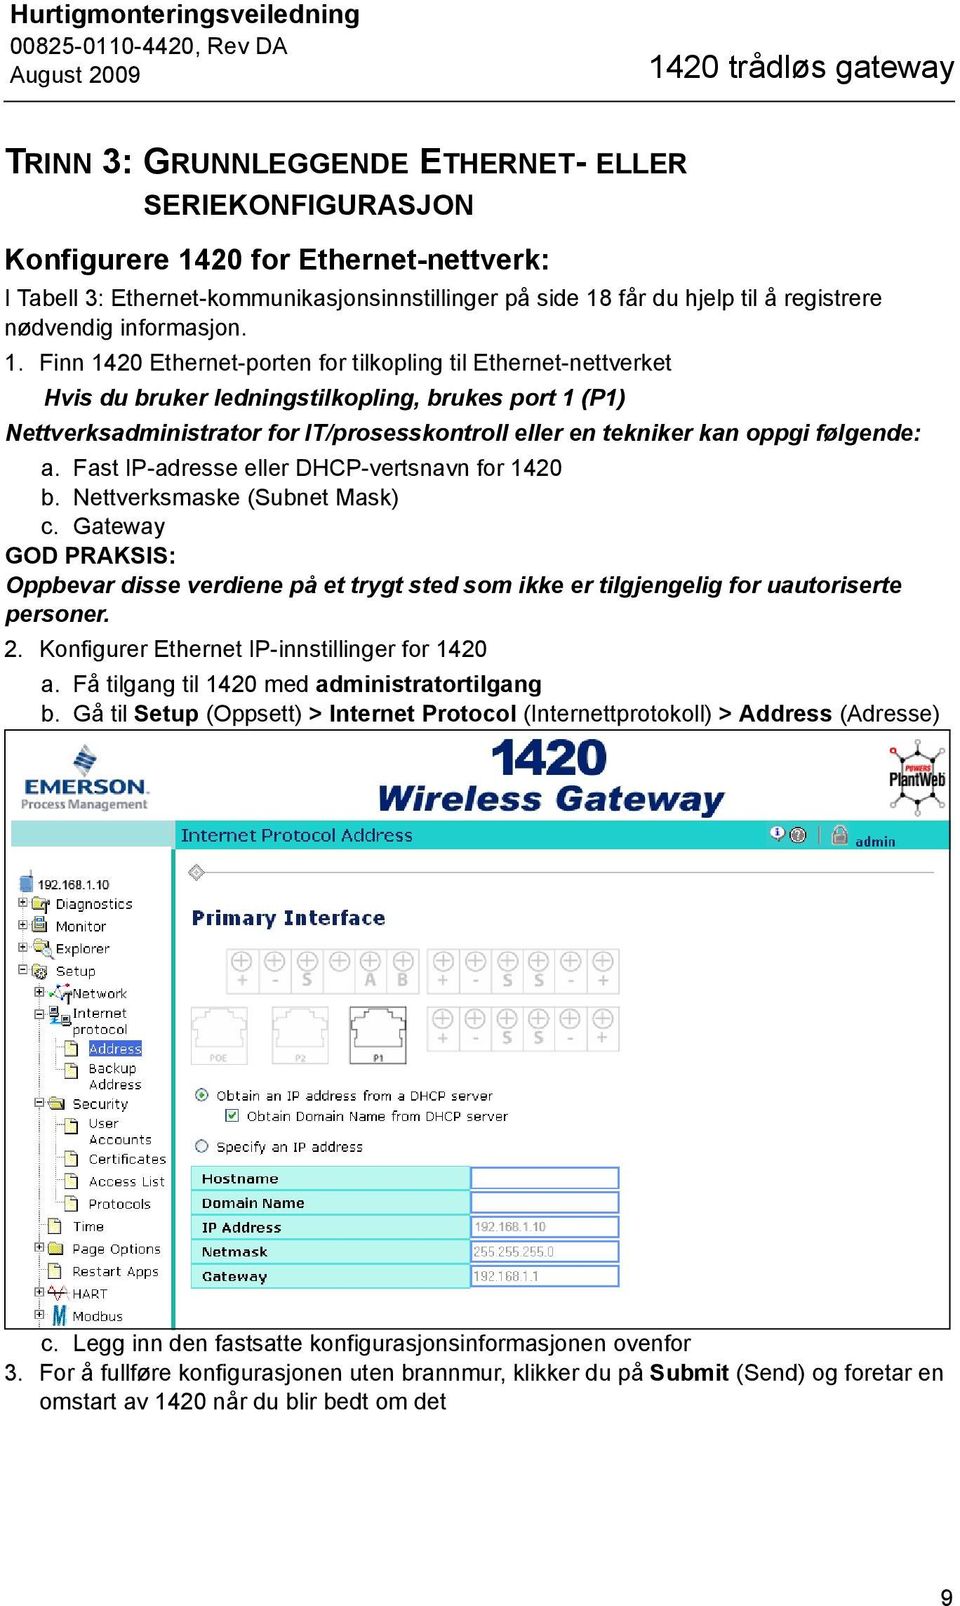 Finn 1420 Ethernet-porten for tilkopling til Ethernet-nettverket Hvis du bruker ledningstilkopling, brukes port 1 (P1) Nettverksadministrator for IT/prosesskontroll eller en tekniker kan oppgi